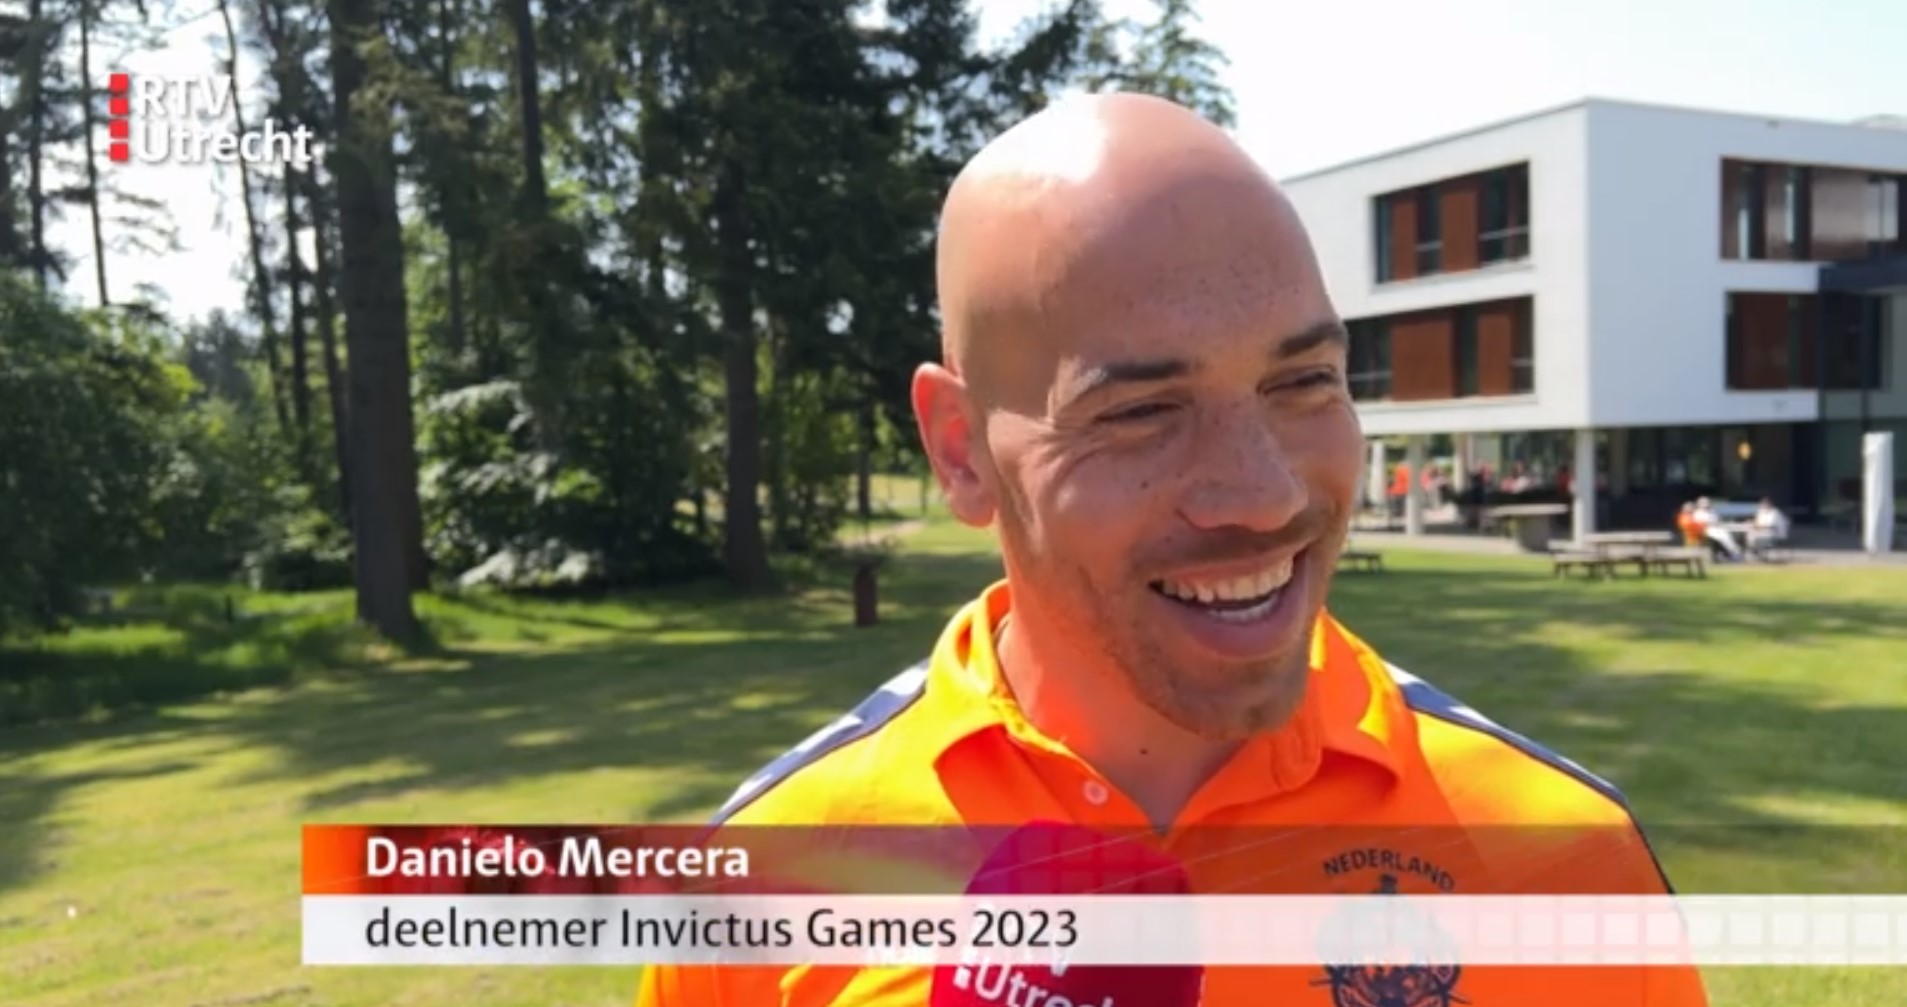 Danielo Mercera wordt geinterviewd tijdens de presentatie van het Nederlandse team